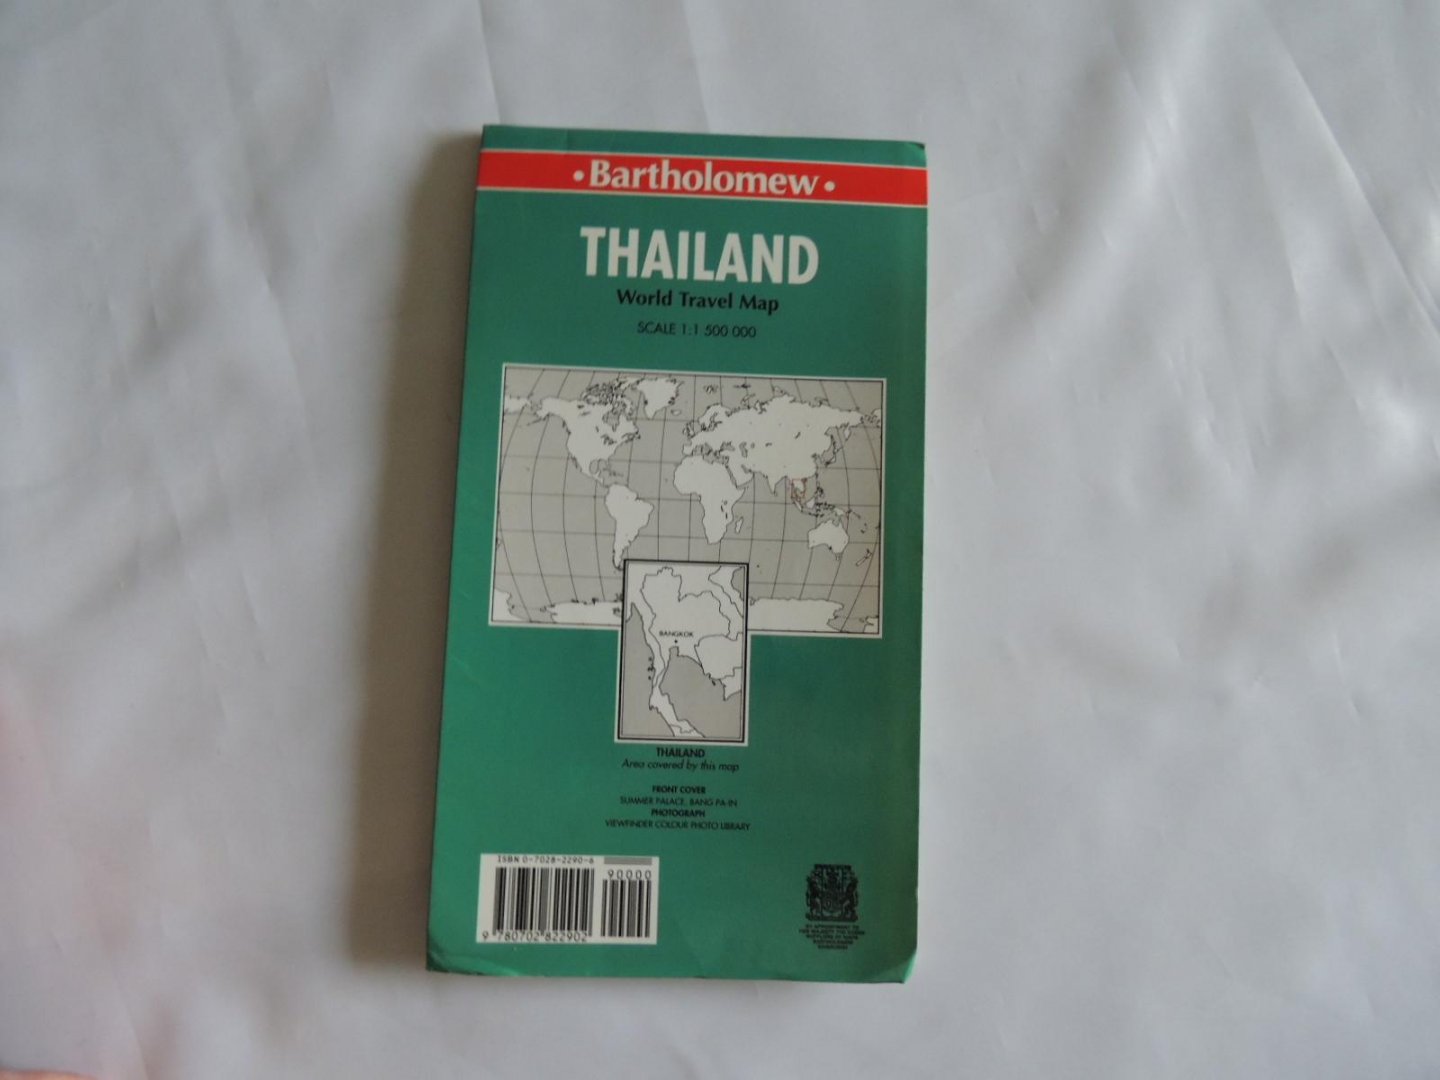  - thailand  world travel Map